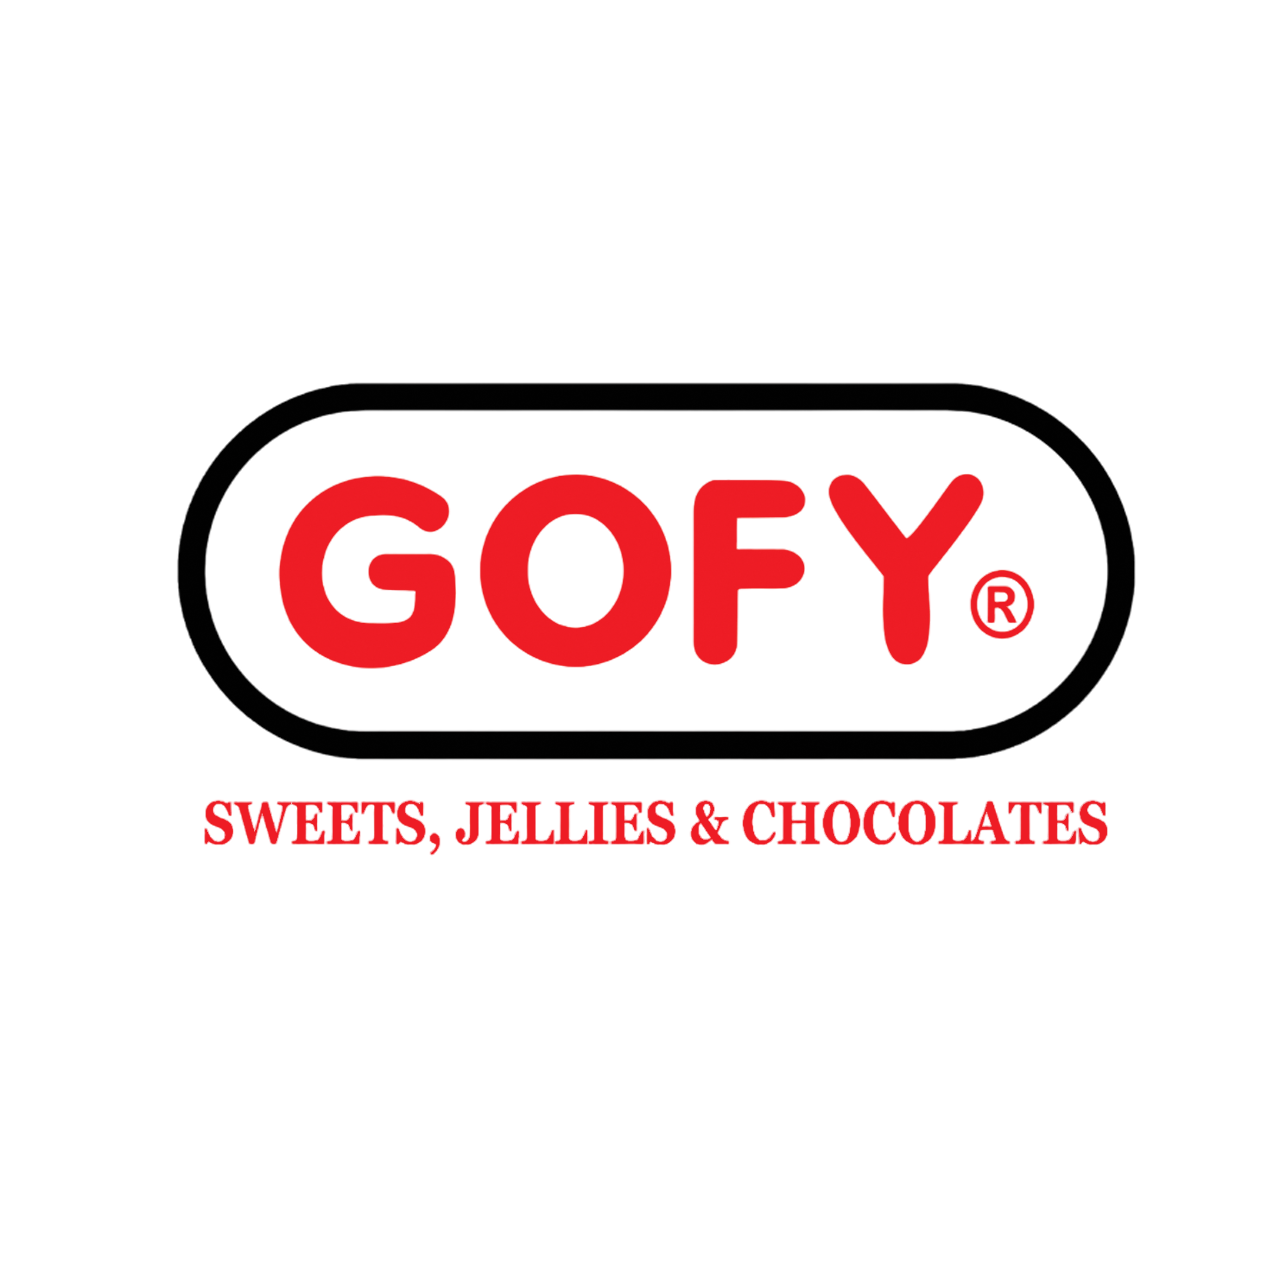 Gofy candy